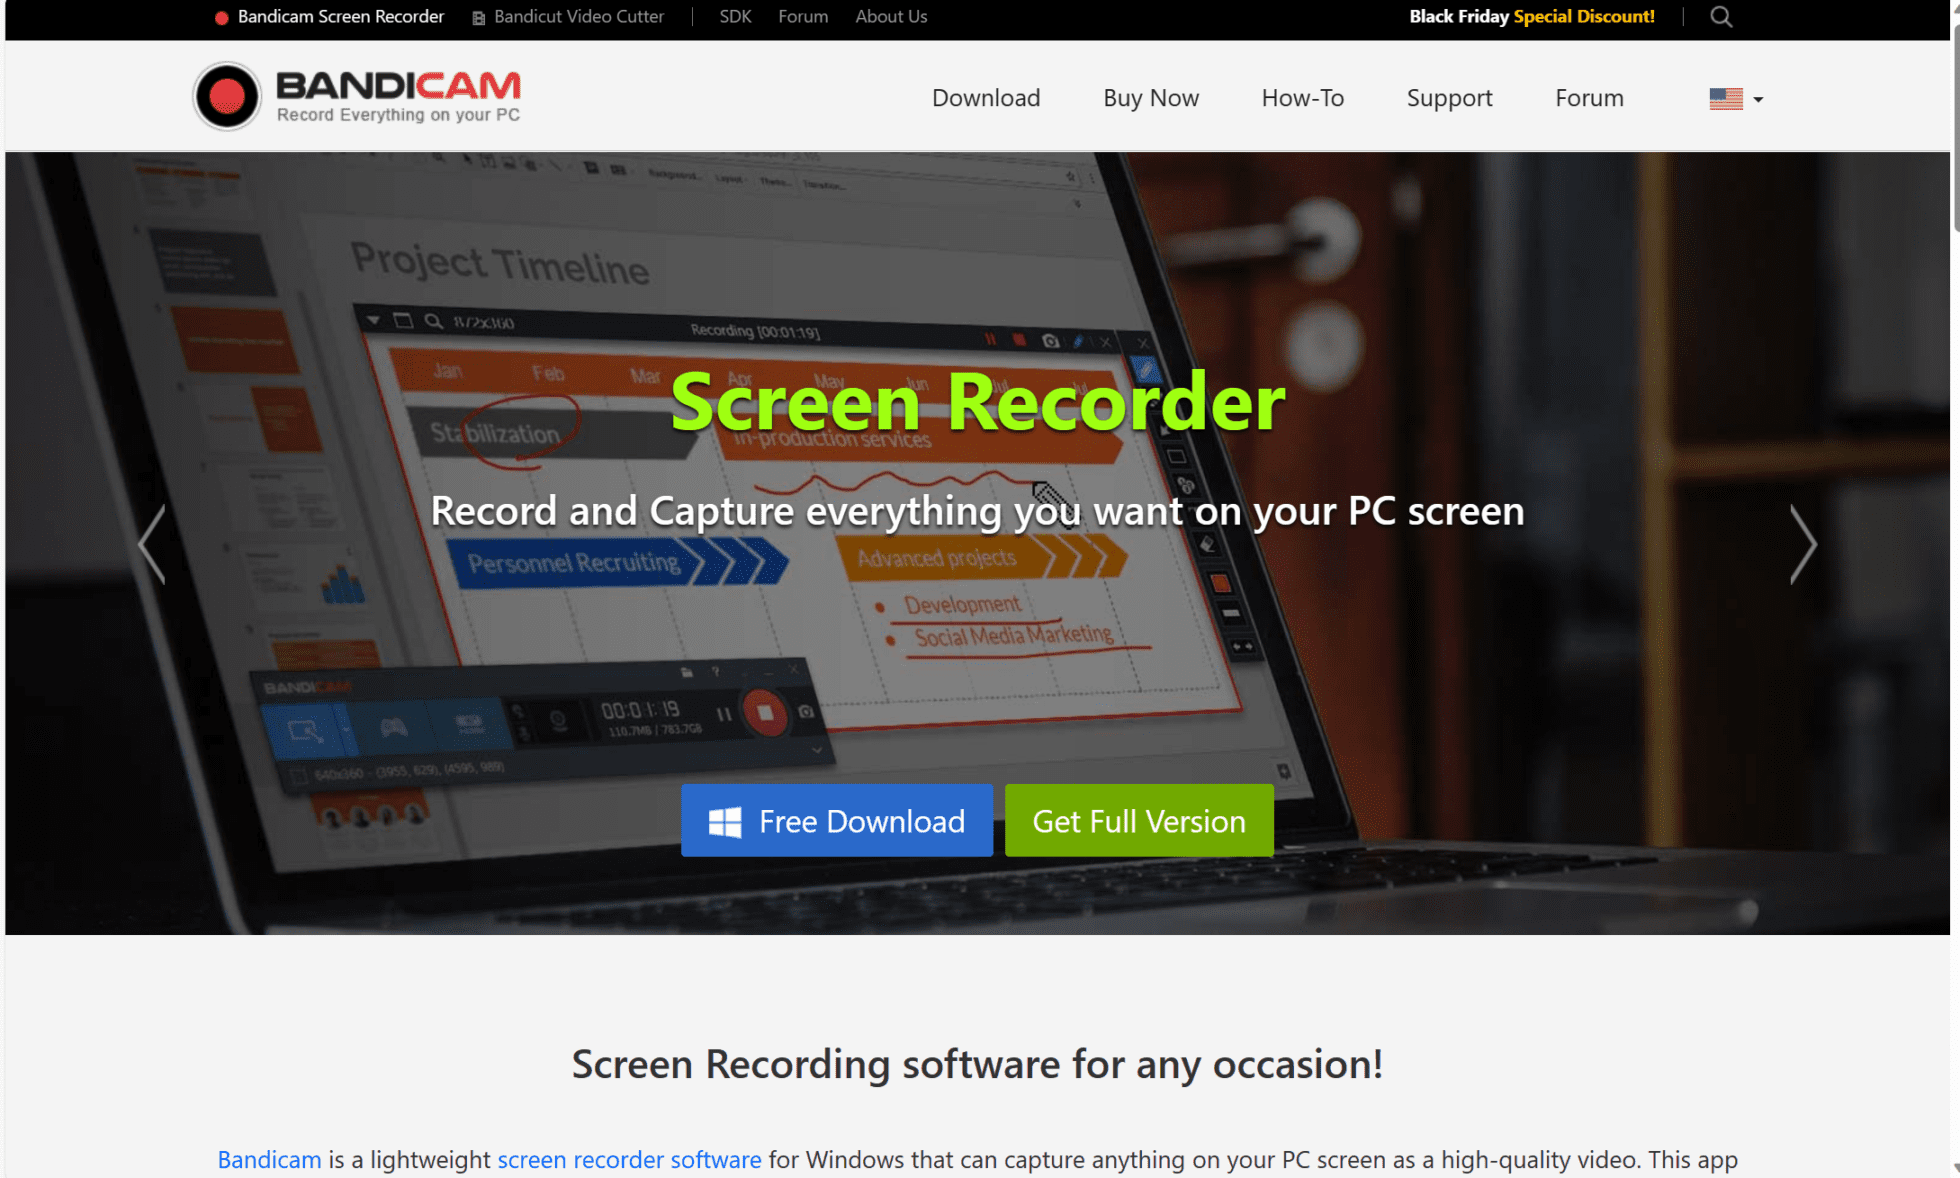 Bandicam is a brilliant screen recorder.